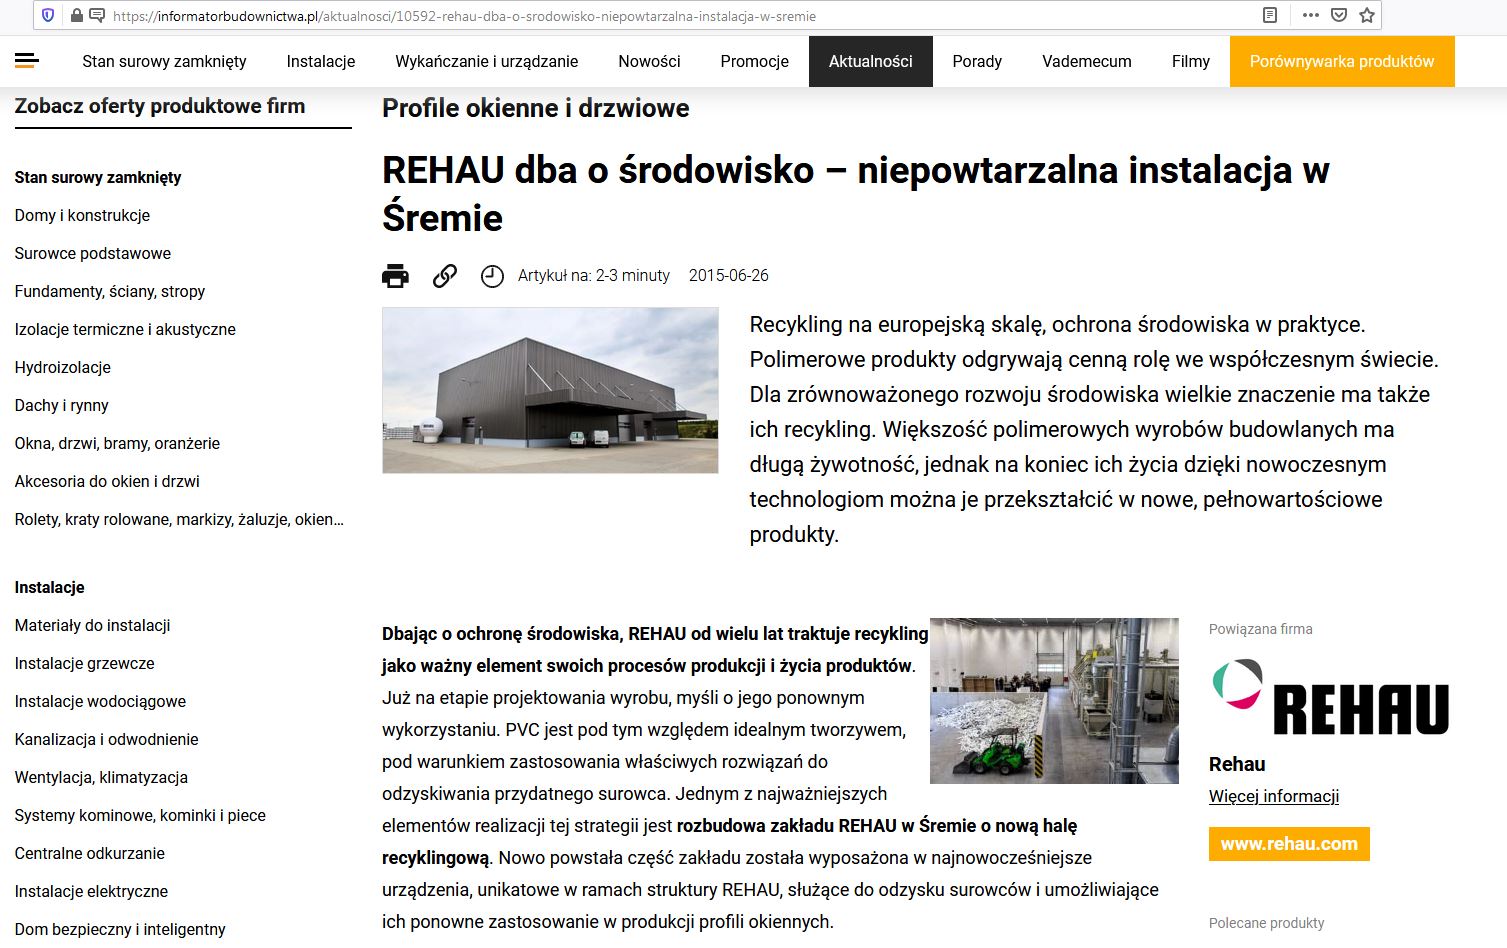 Projekt przemysłowy - hala recyklingu zakładu Rehau w Śremie